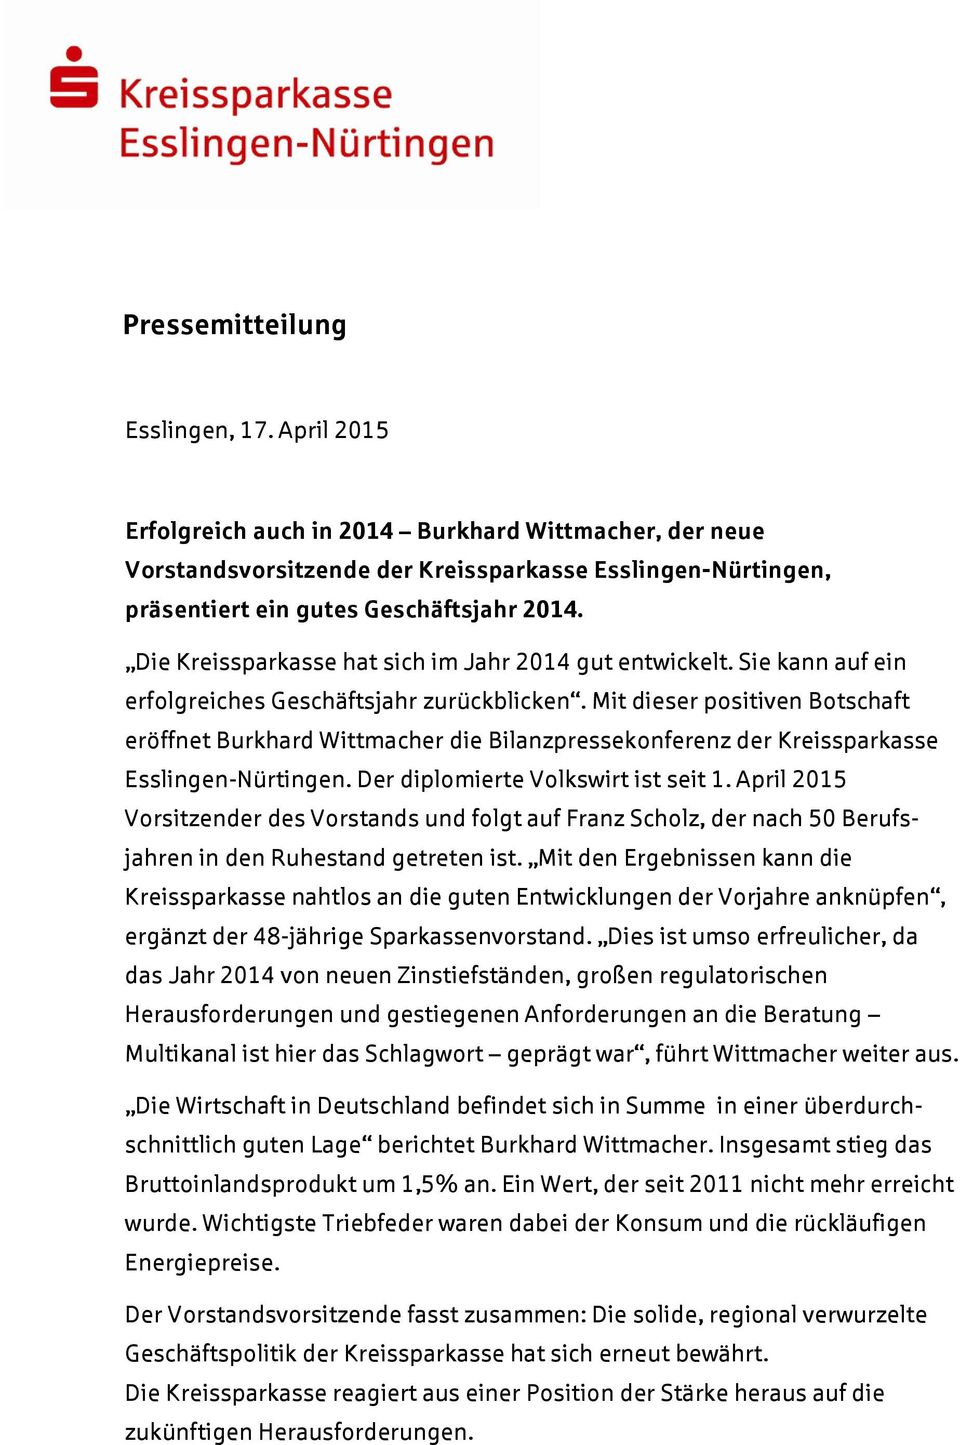 Mit dieser positiven Botschaft eröffnet Burkhard Wittmacher die Bilanzpressekonferenz der Kreissparkasse Esslingen-Nürtingen. Der diplomierte Volkswirt ist seit 1.